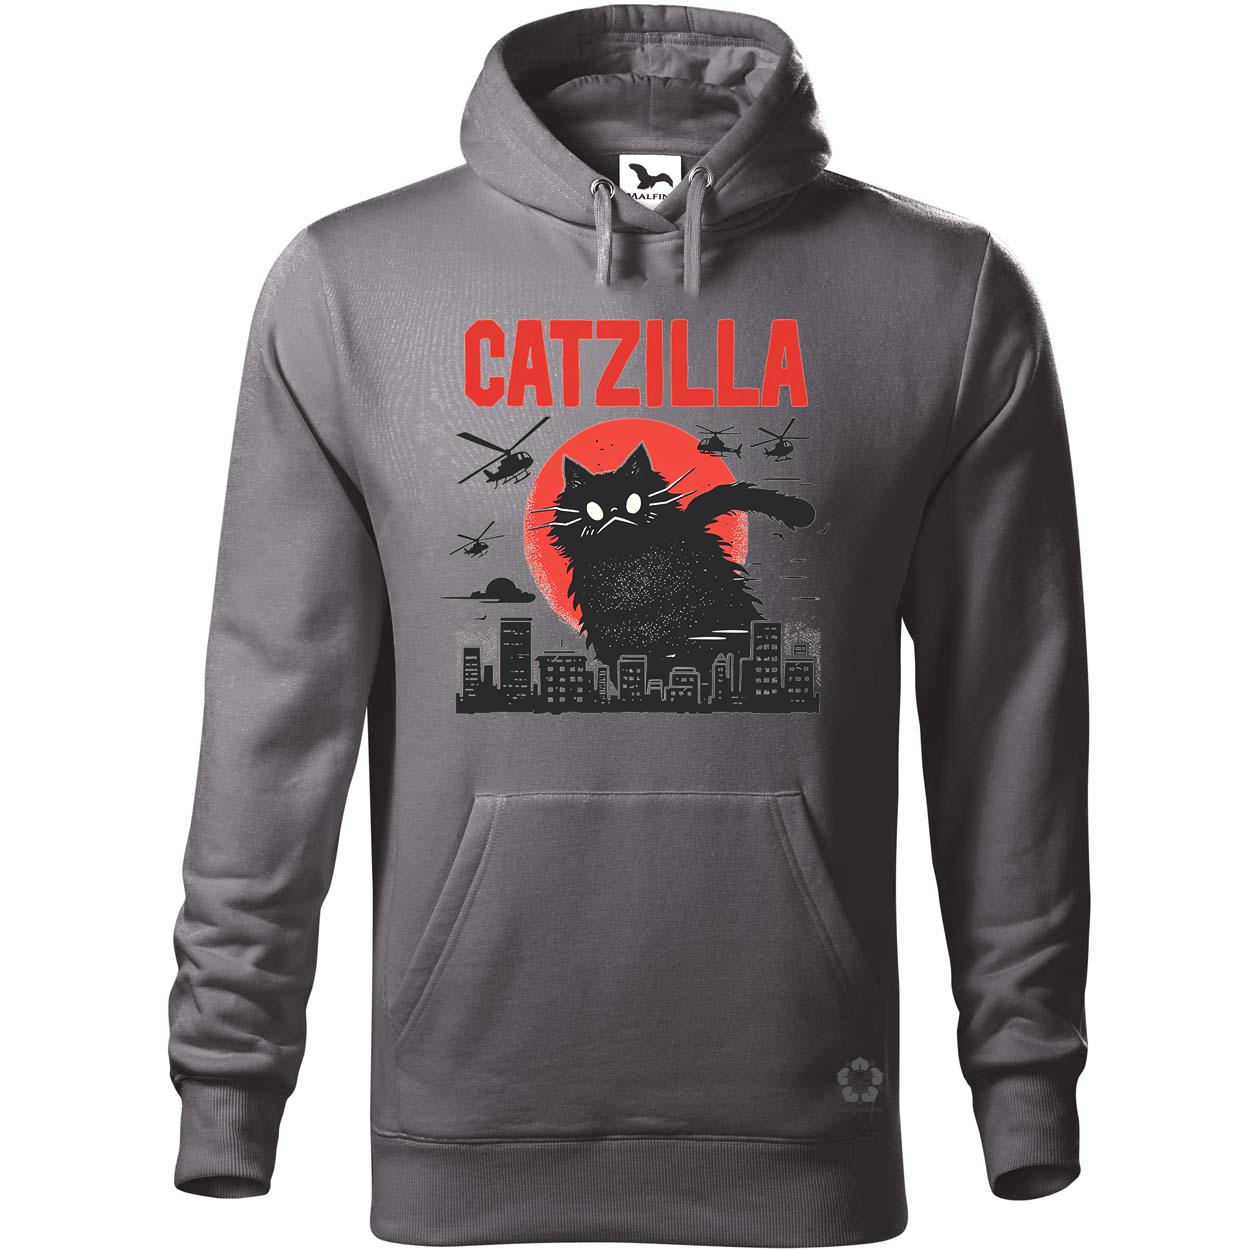 Catzilla v9